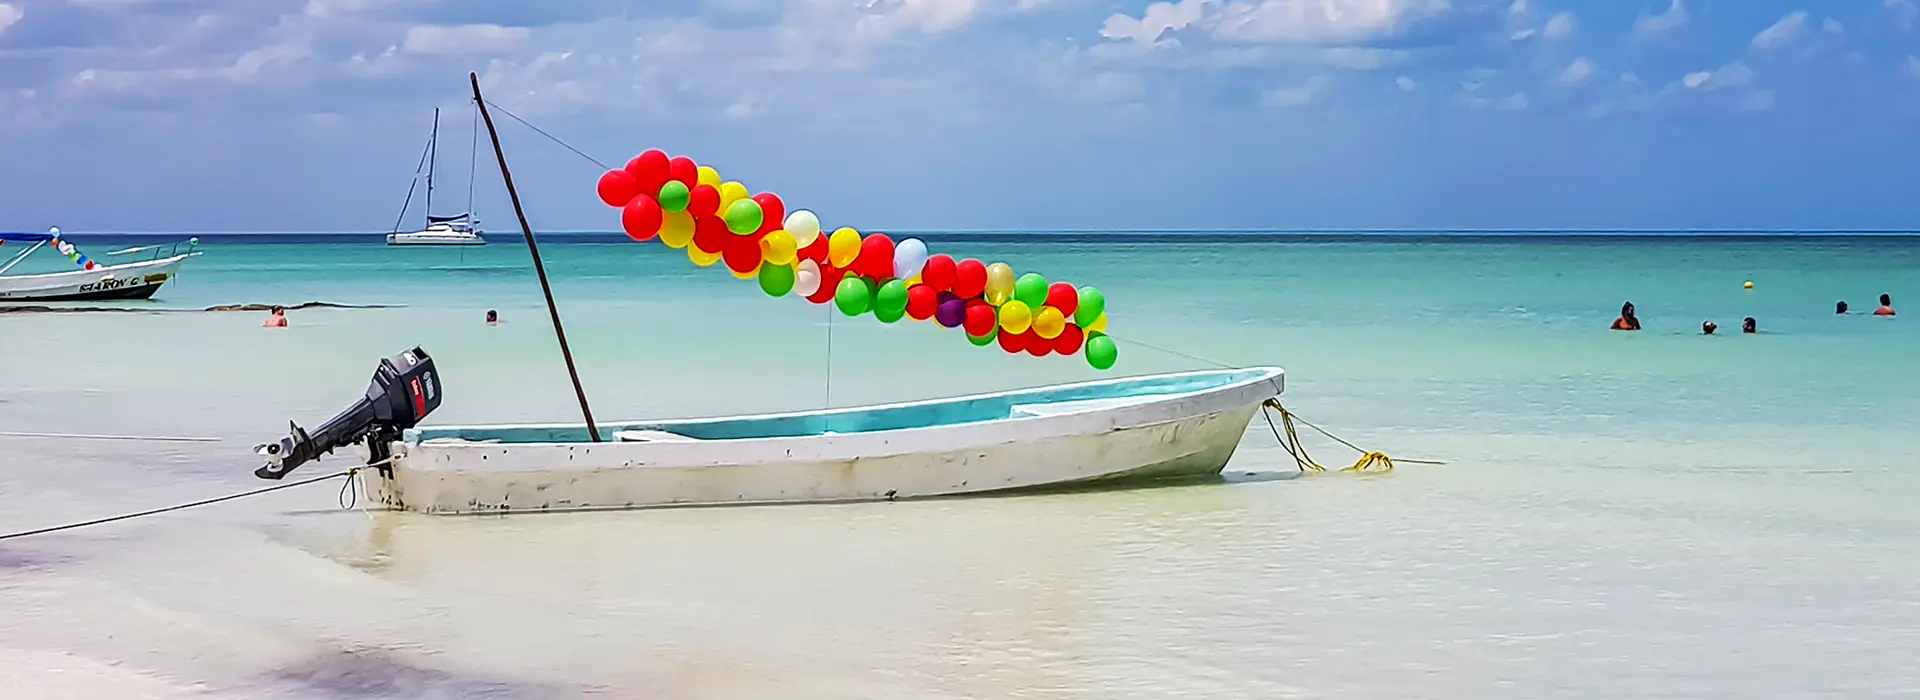 Geschmücktes Boot am Strand der Insel Holbox